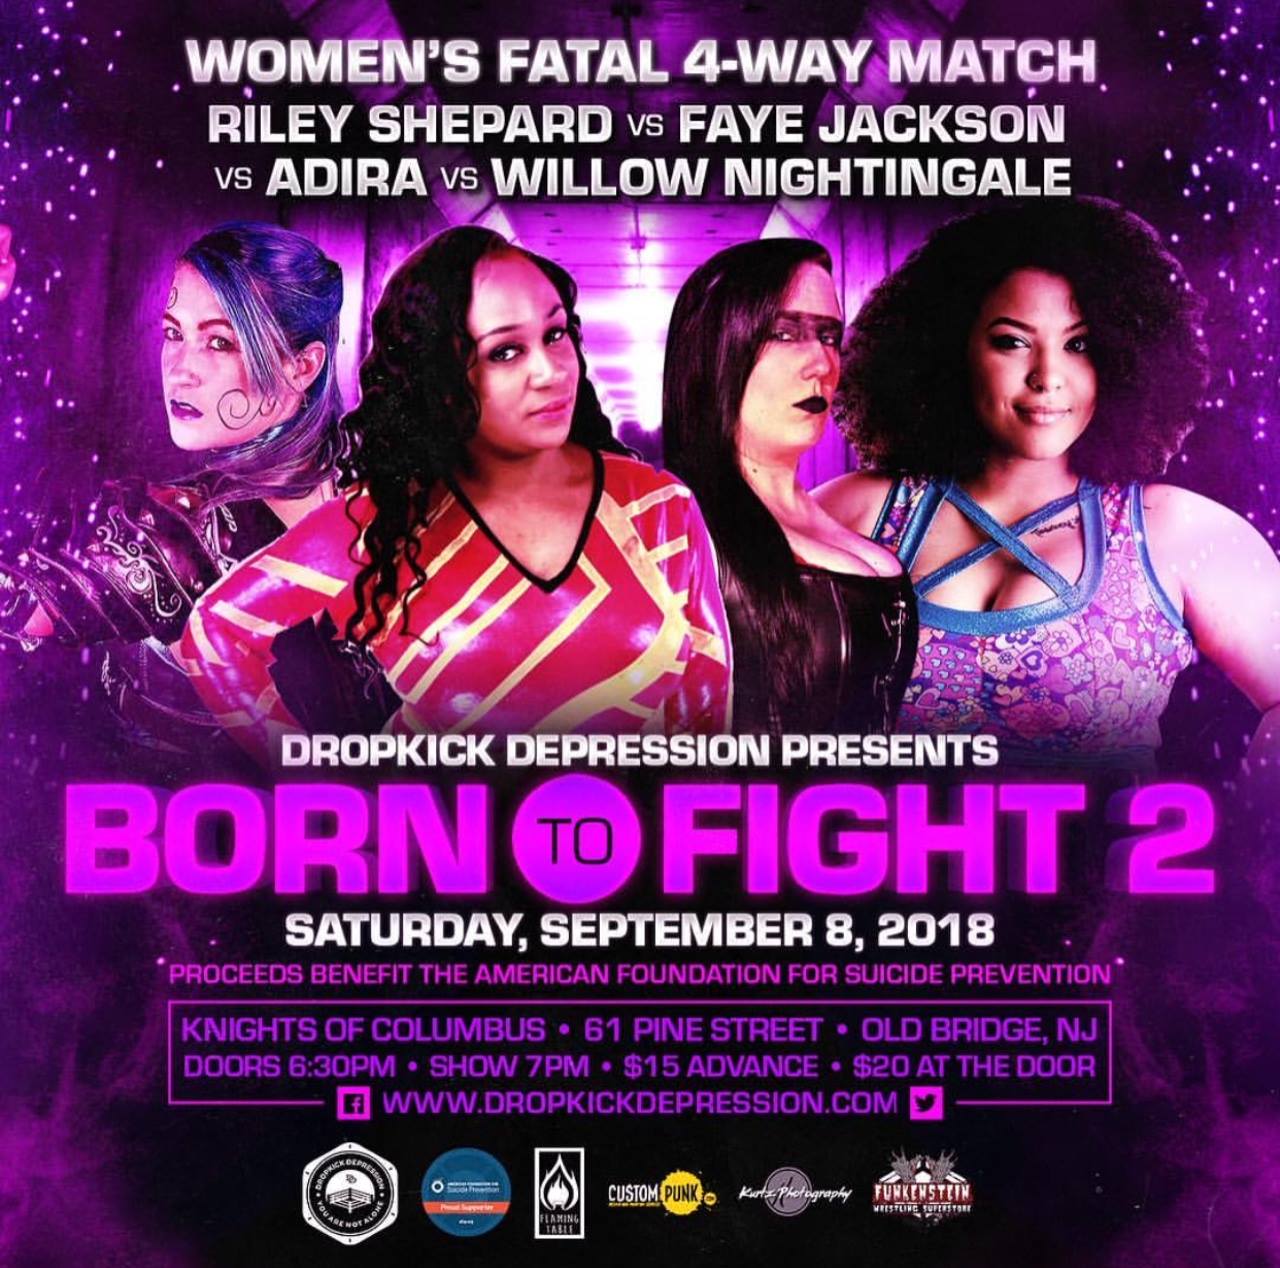 Dropkick Depression Presents Born to Fight 2: Riley Shepard vs Faye Jackson vs Adira vs Willow Nightingale